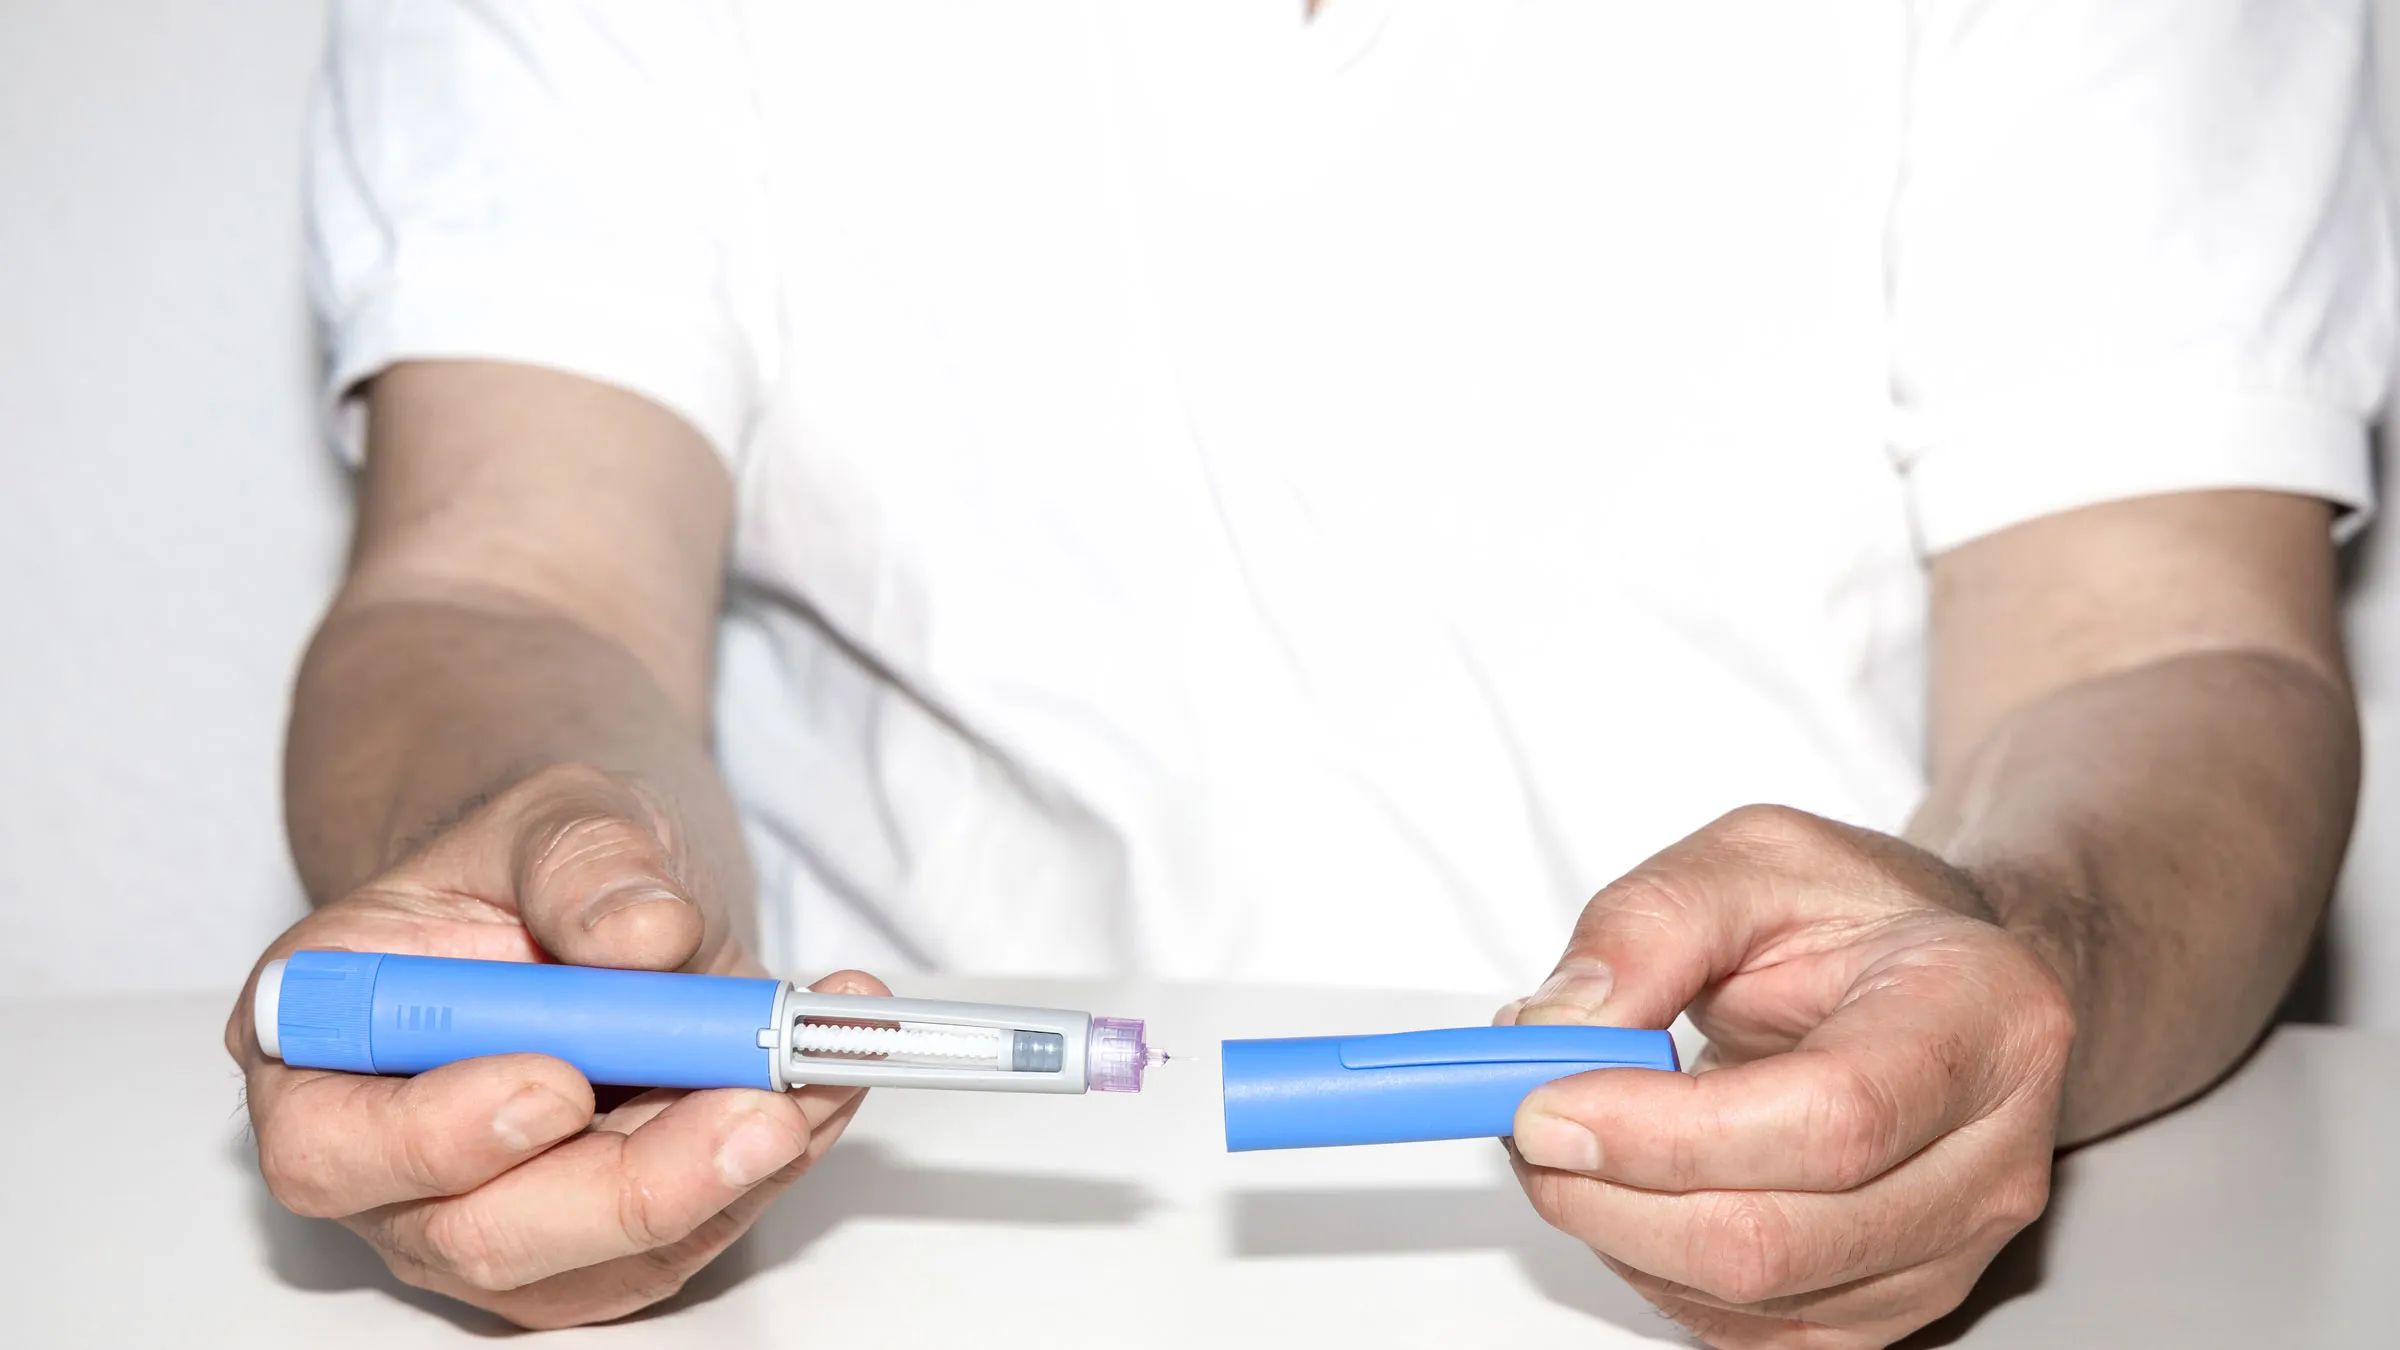 La startup rBIO anuncia avances en la producción de insulina más barata